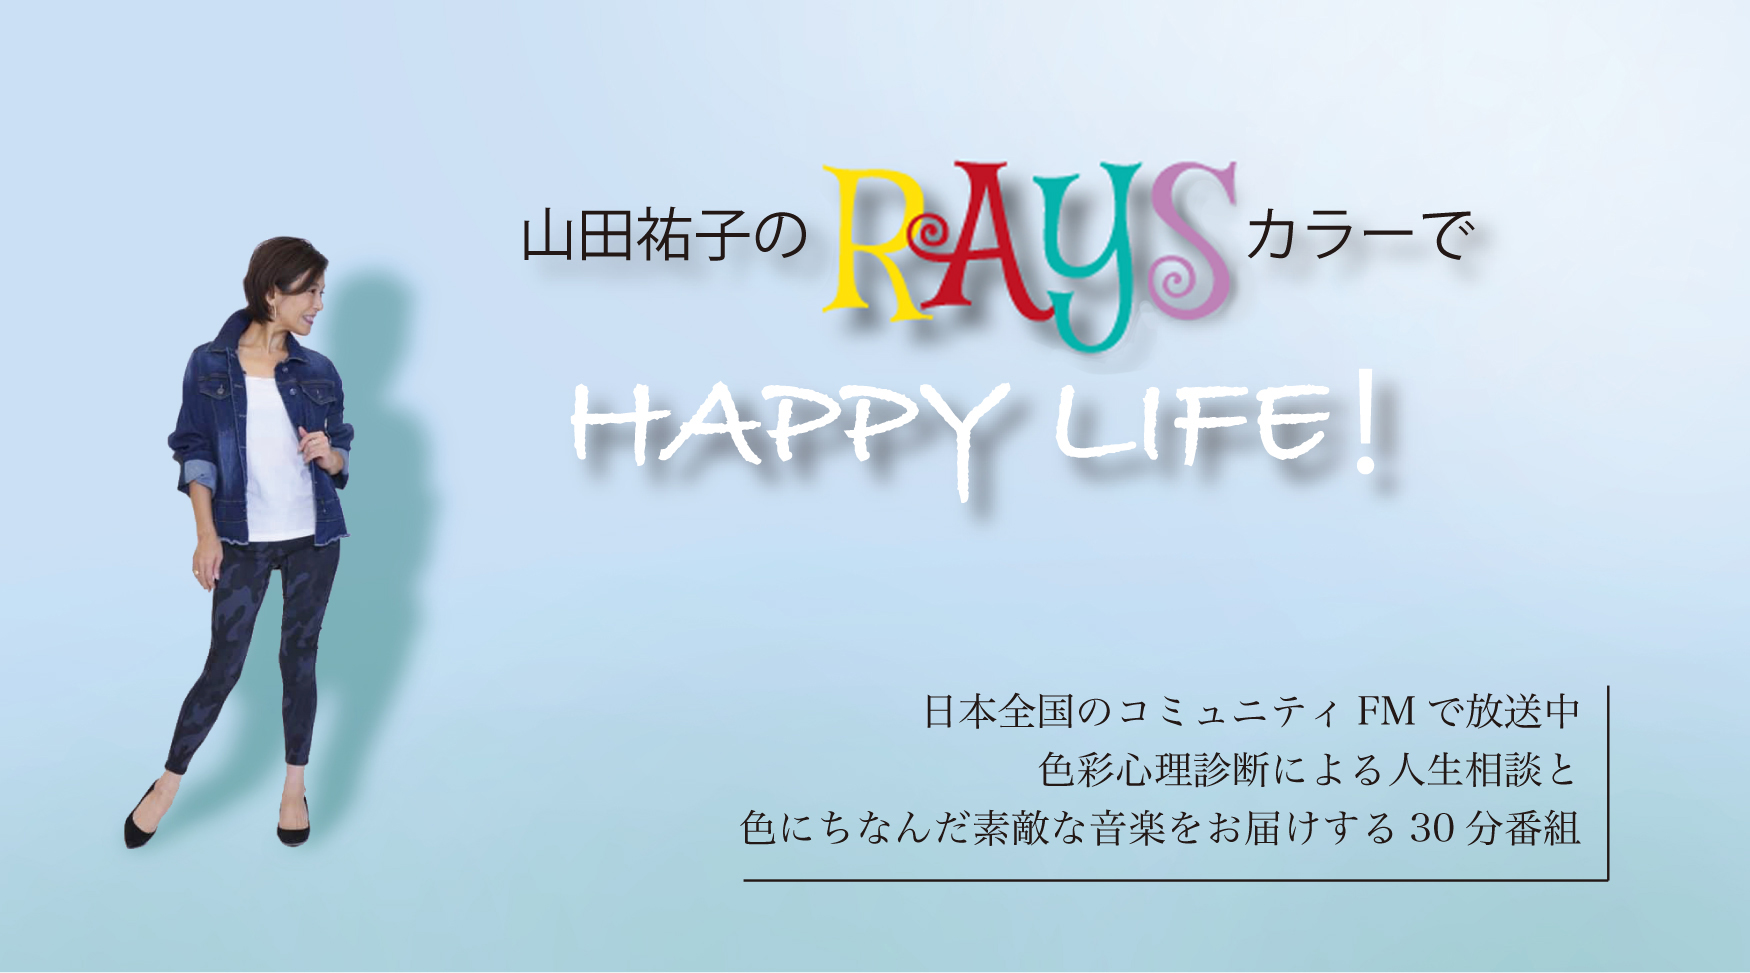 【山田祐子のRAYSカラーでHAPPY LIFE!】コミュニティFM番組ガイド